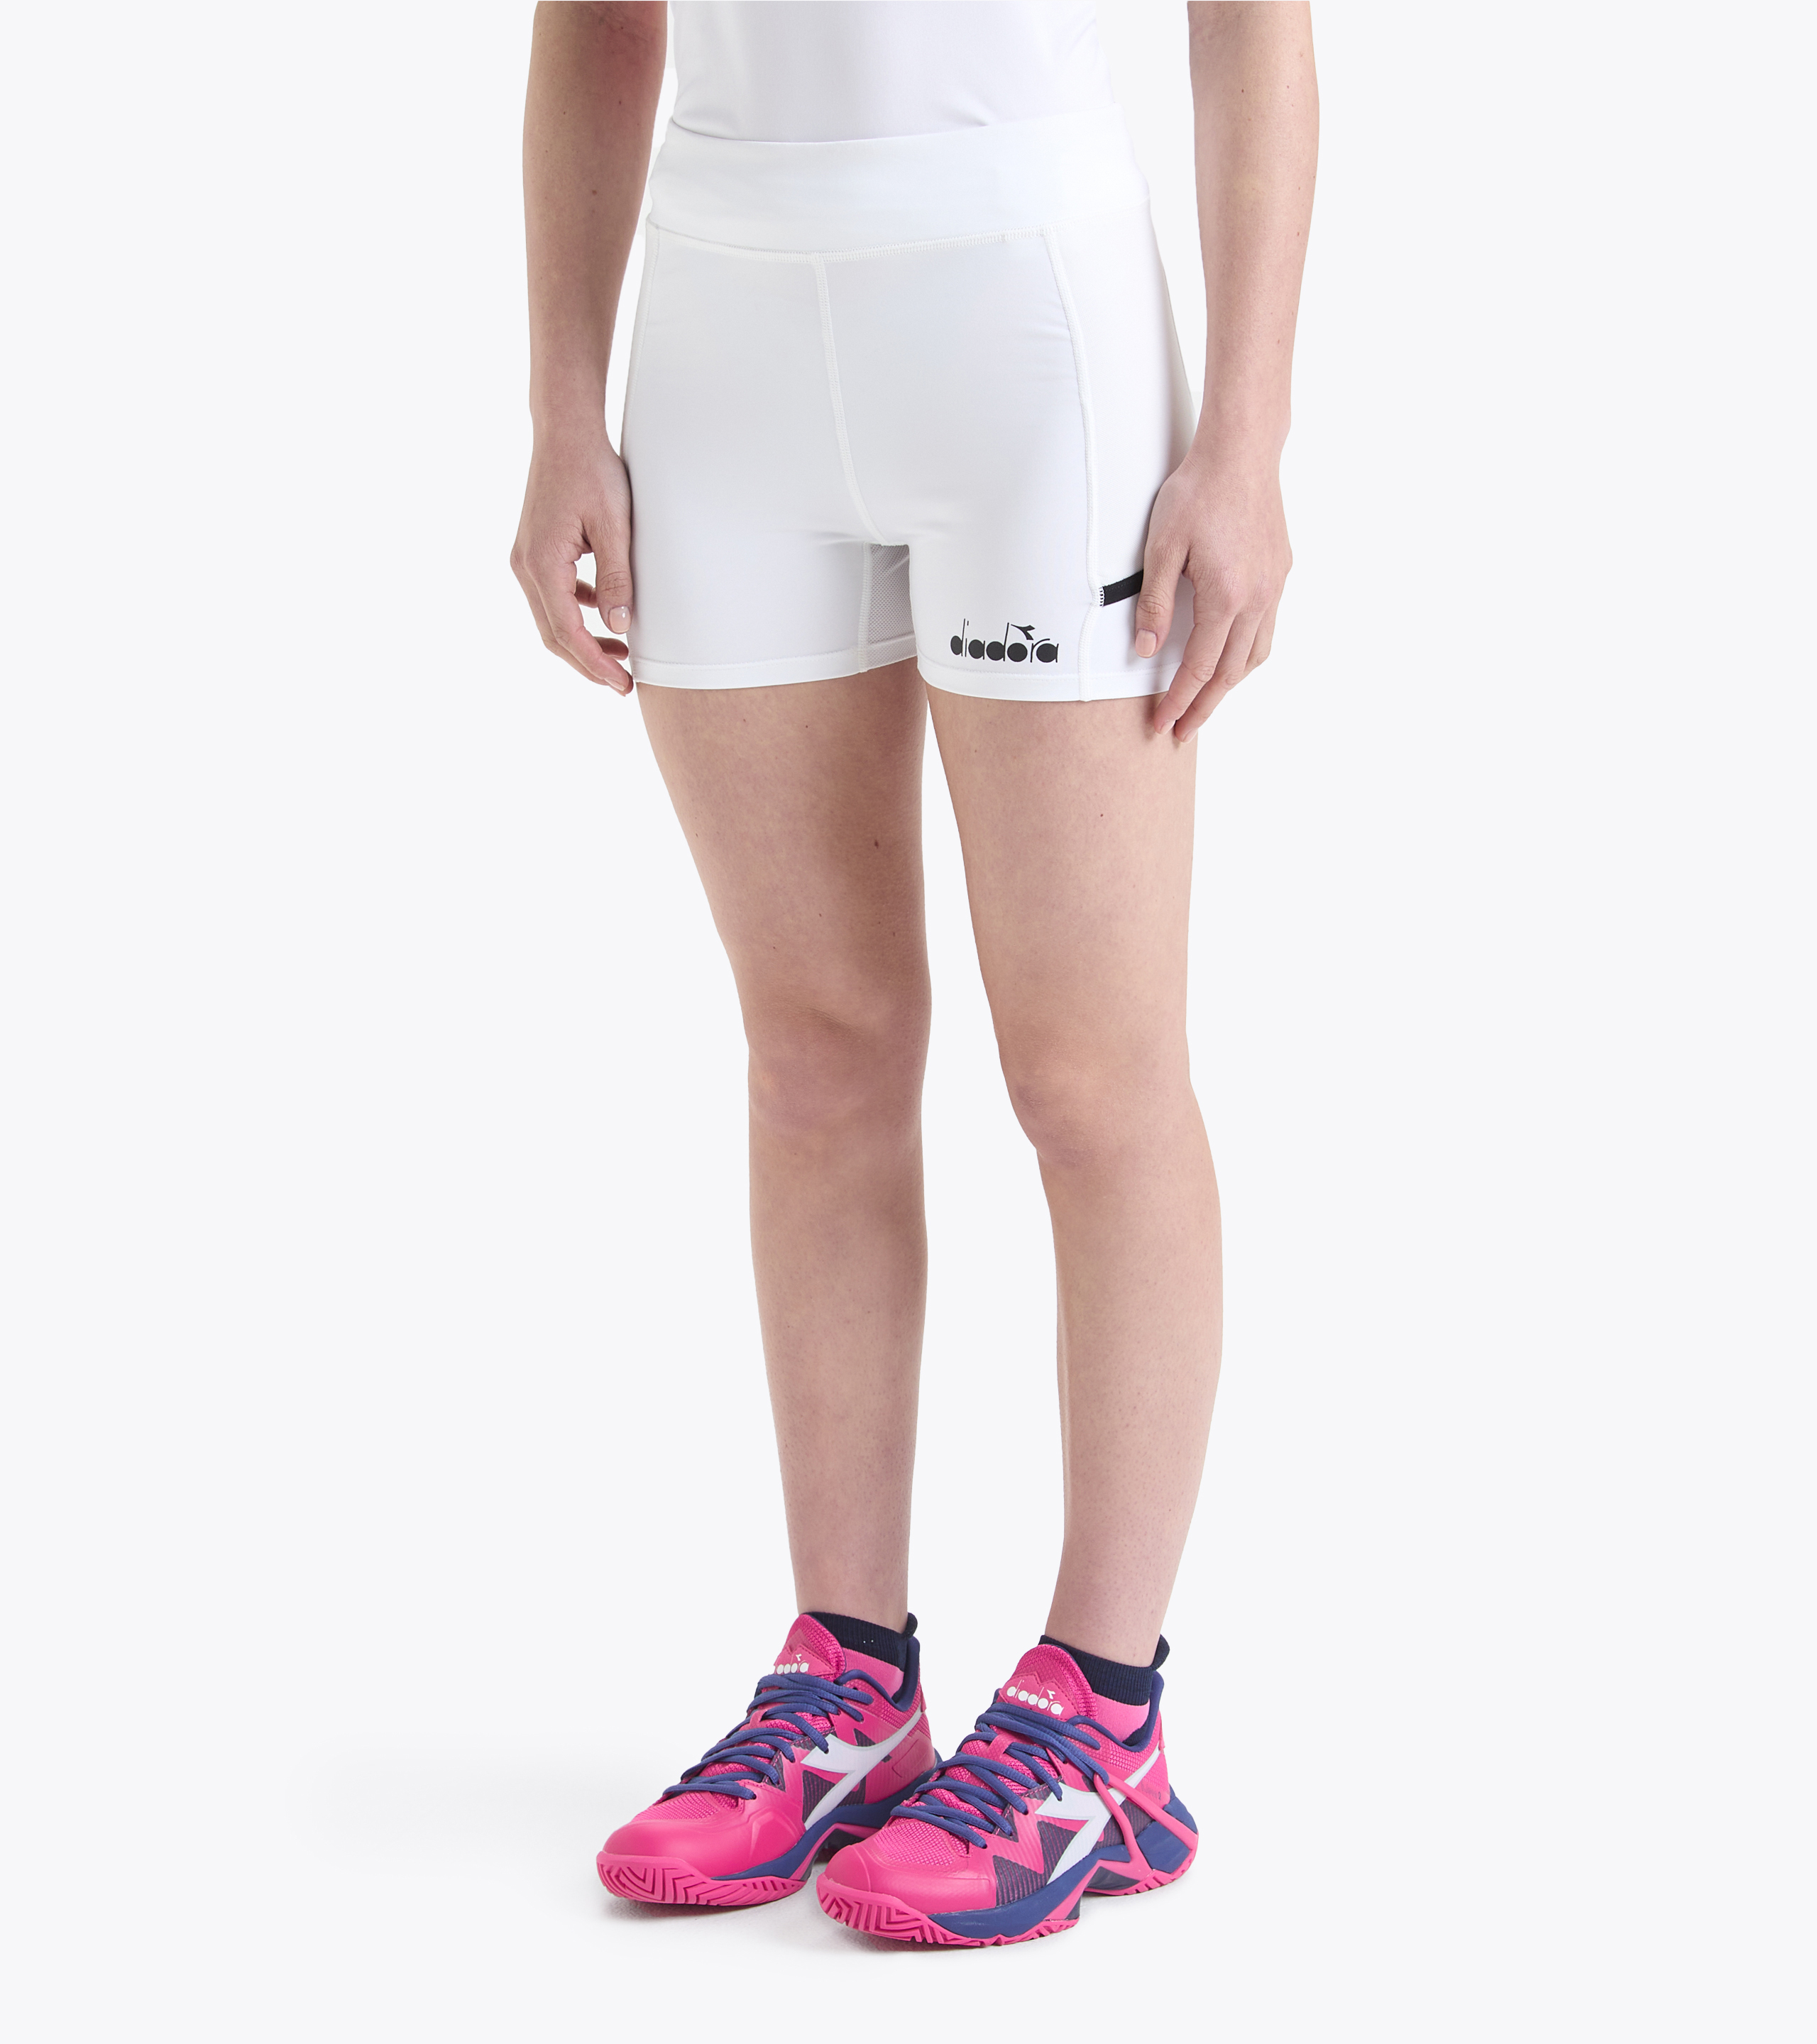 ENDURANCE Thadea Pocket Tights - Running tights Women's, Buy online